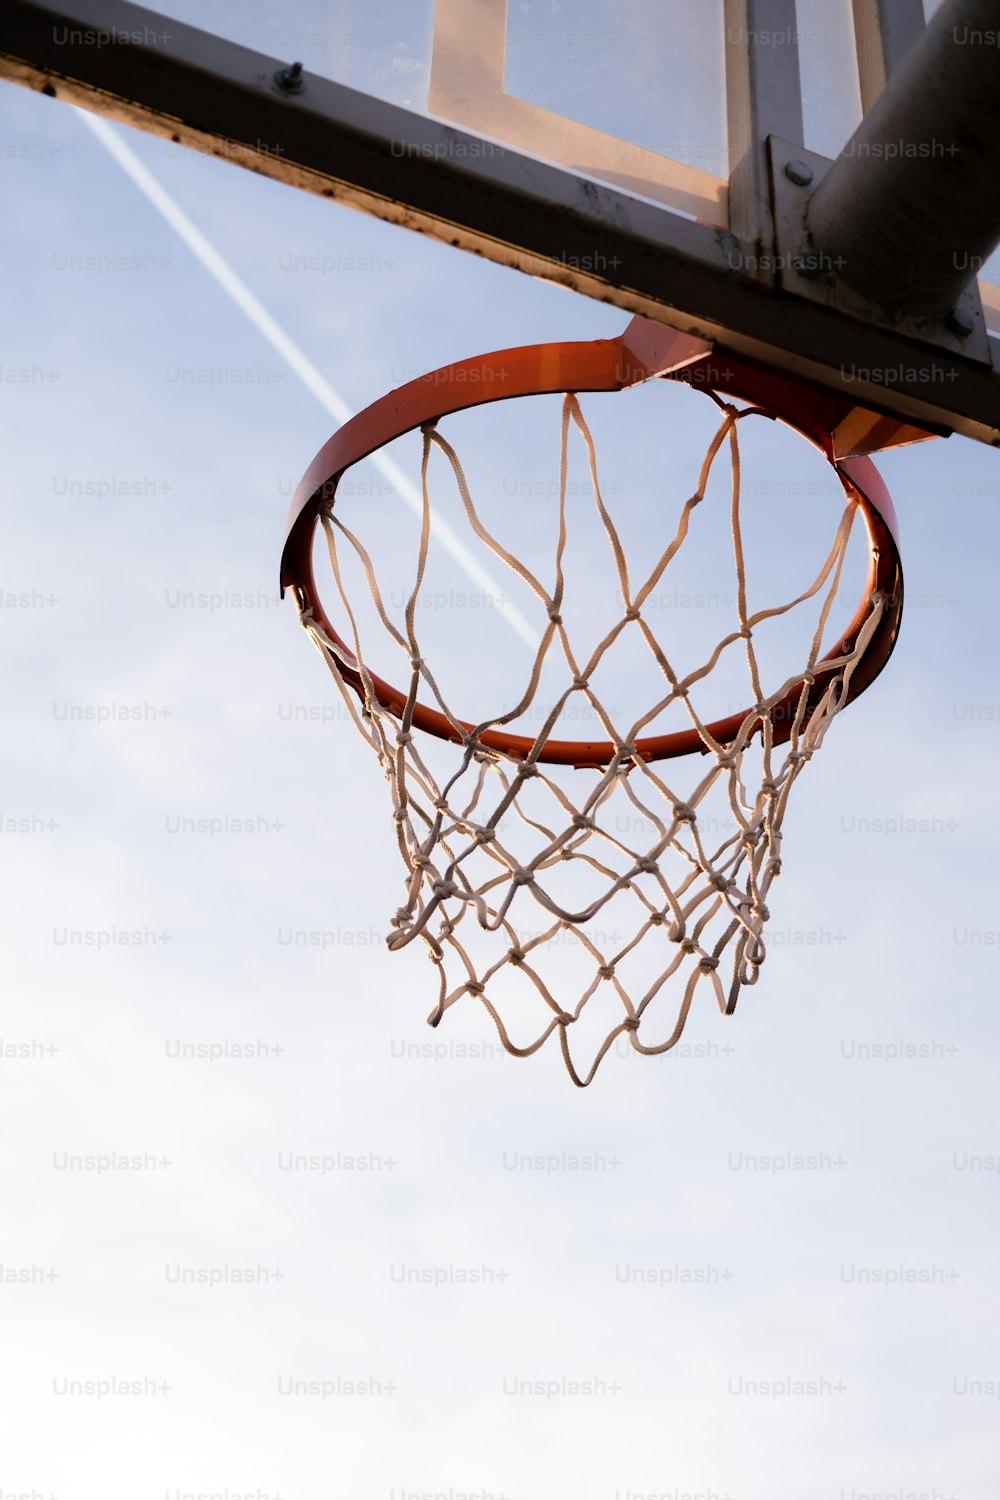 una pelota de baloncesto atravesando el borde de un aro de baloncesto